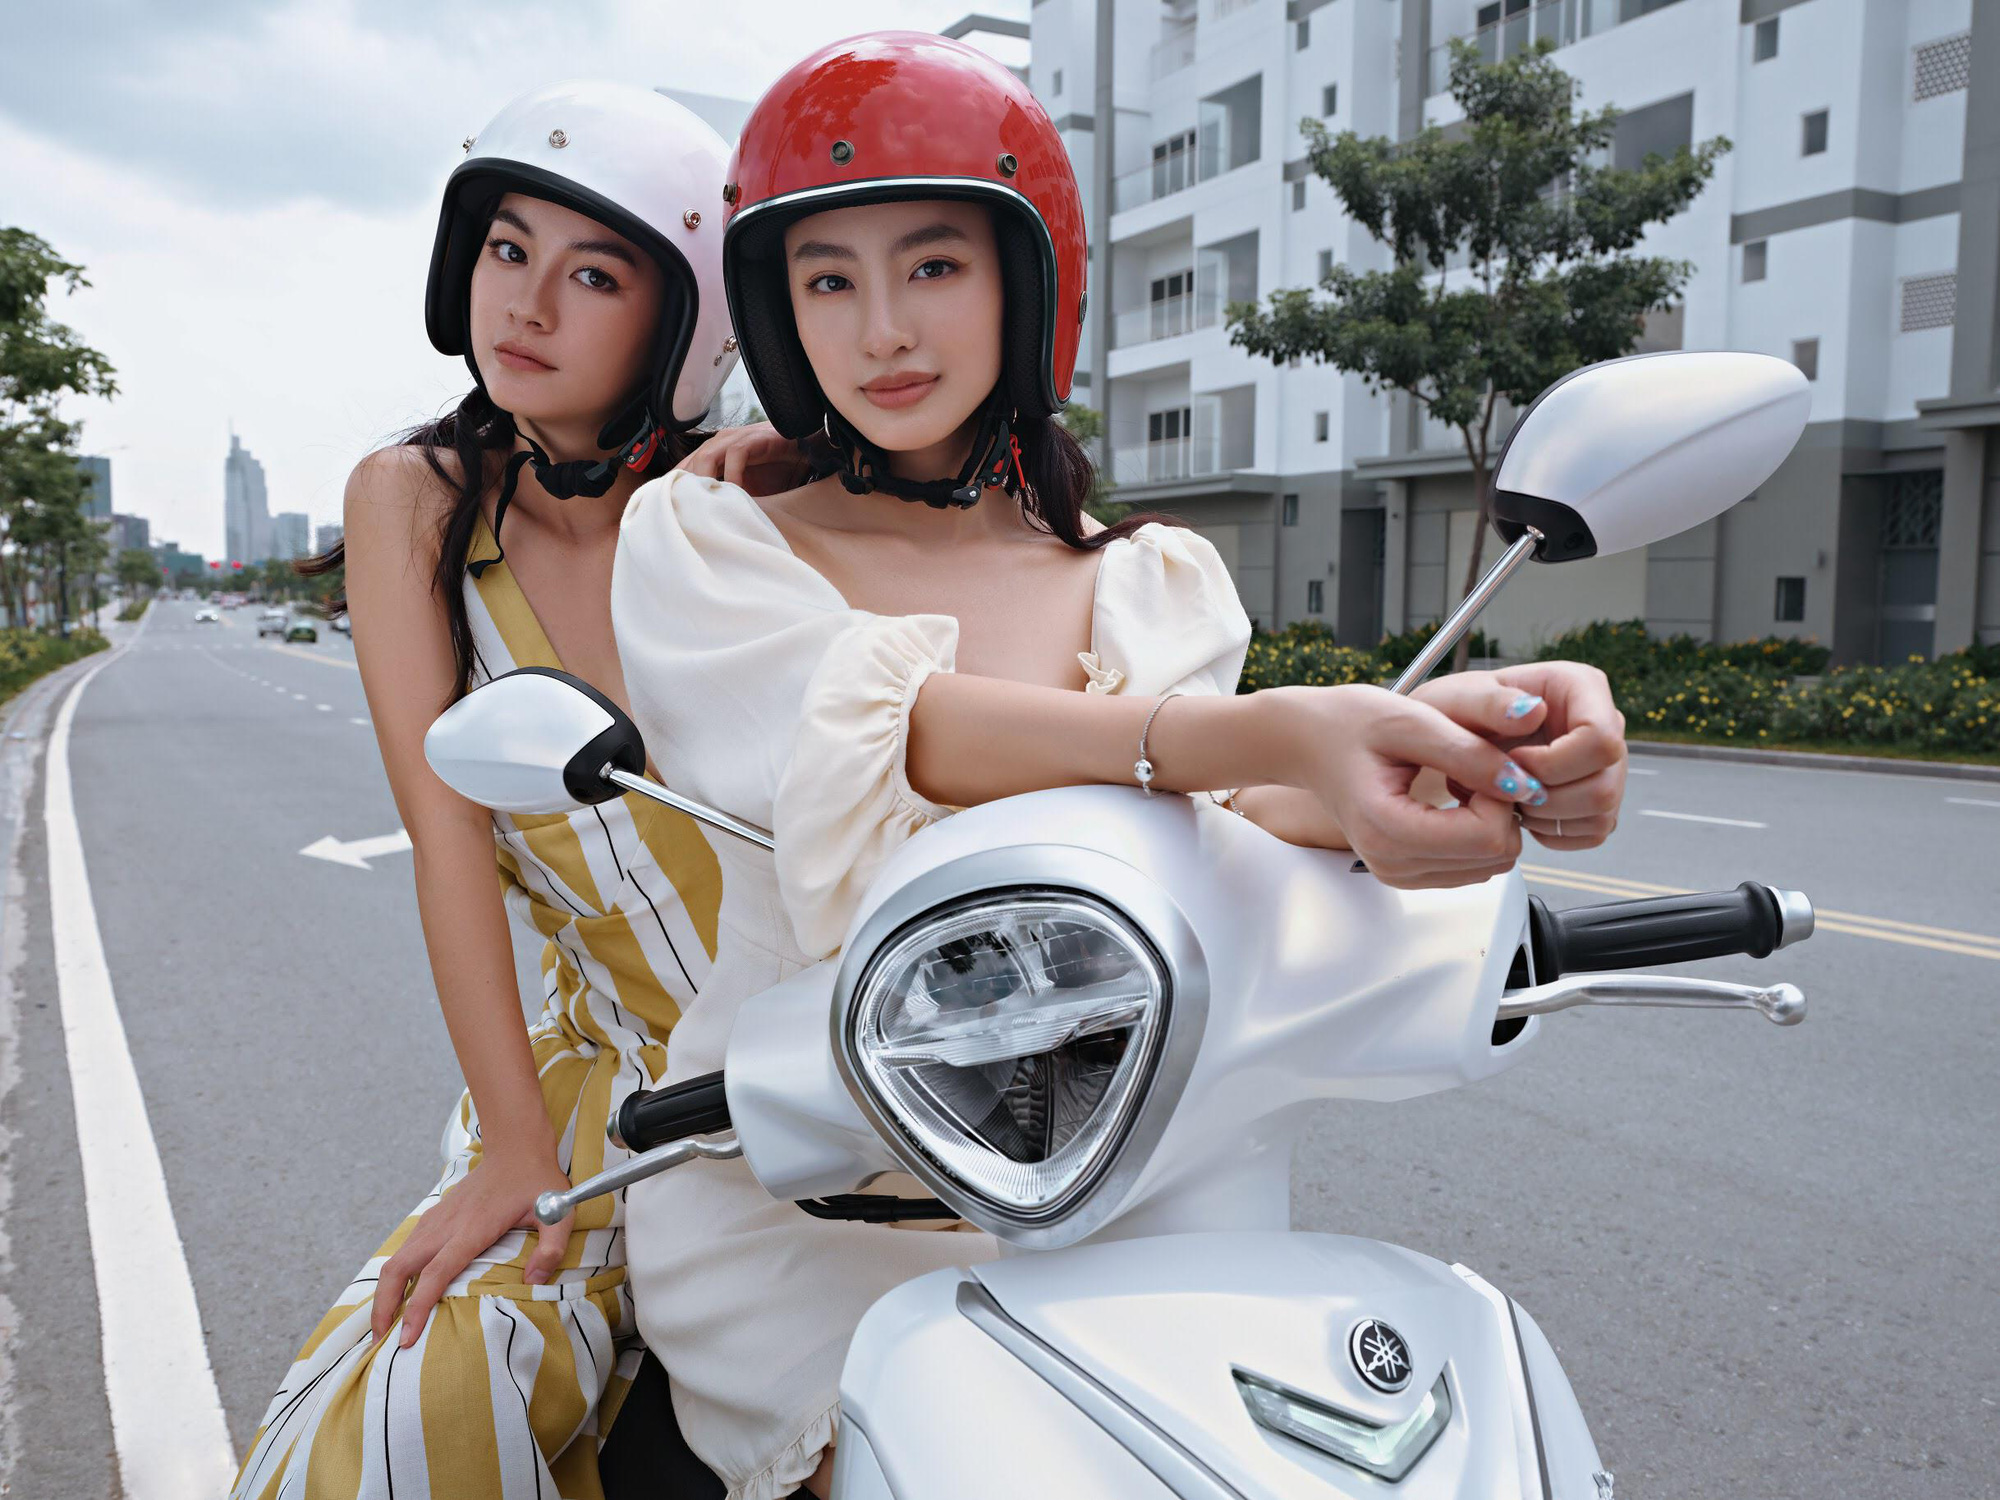 Bật mí lí do người người nhà nhà “đổ xô” đi mua xe máy Yamaha trong dịp Tết Canh Tý 2020 - Ảnh 1.